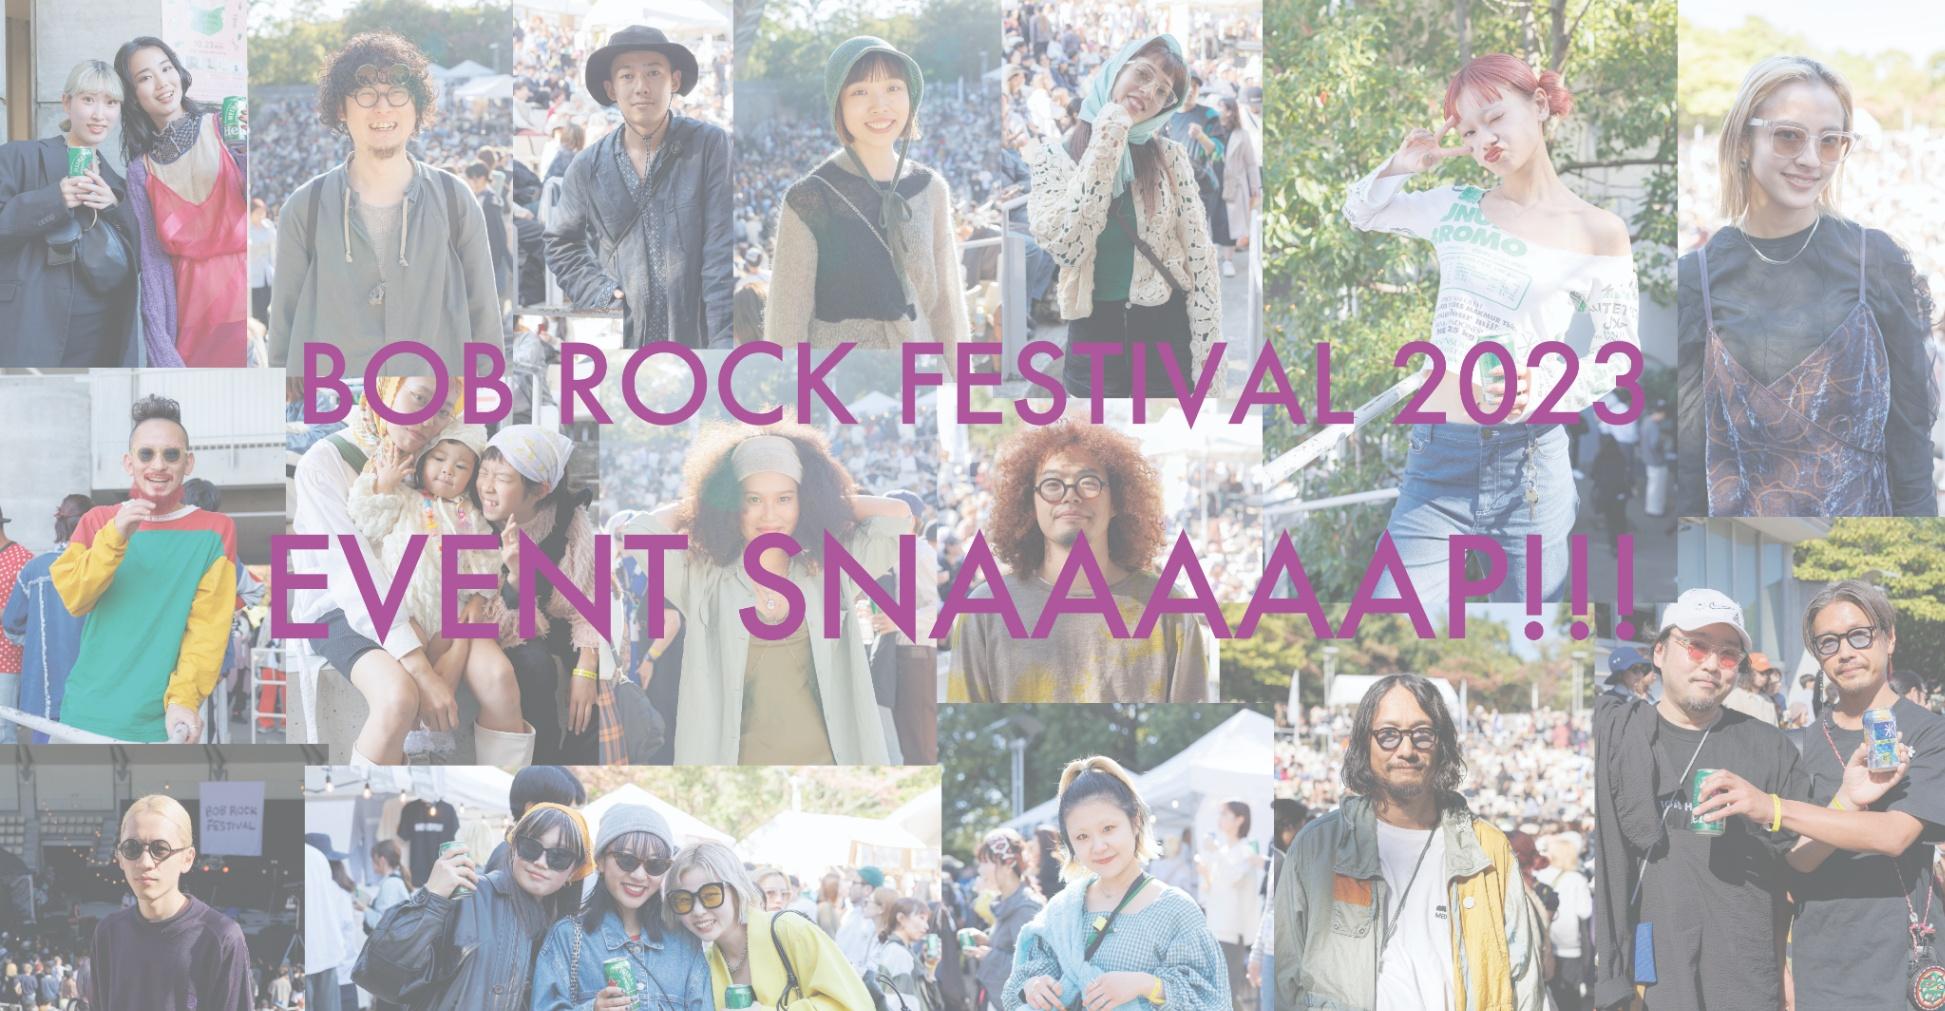 EVENT SNAAAAAP!!! 【BOB ROCK FESTIVAL 2023編 part.1】